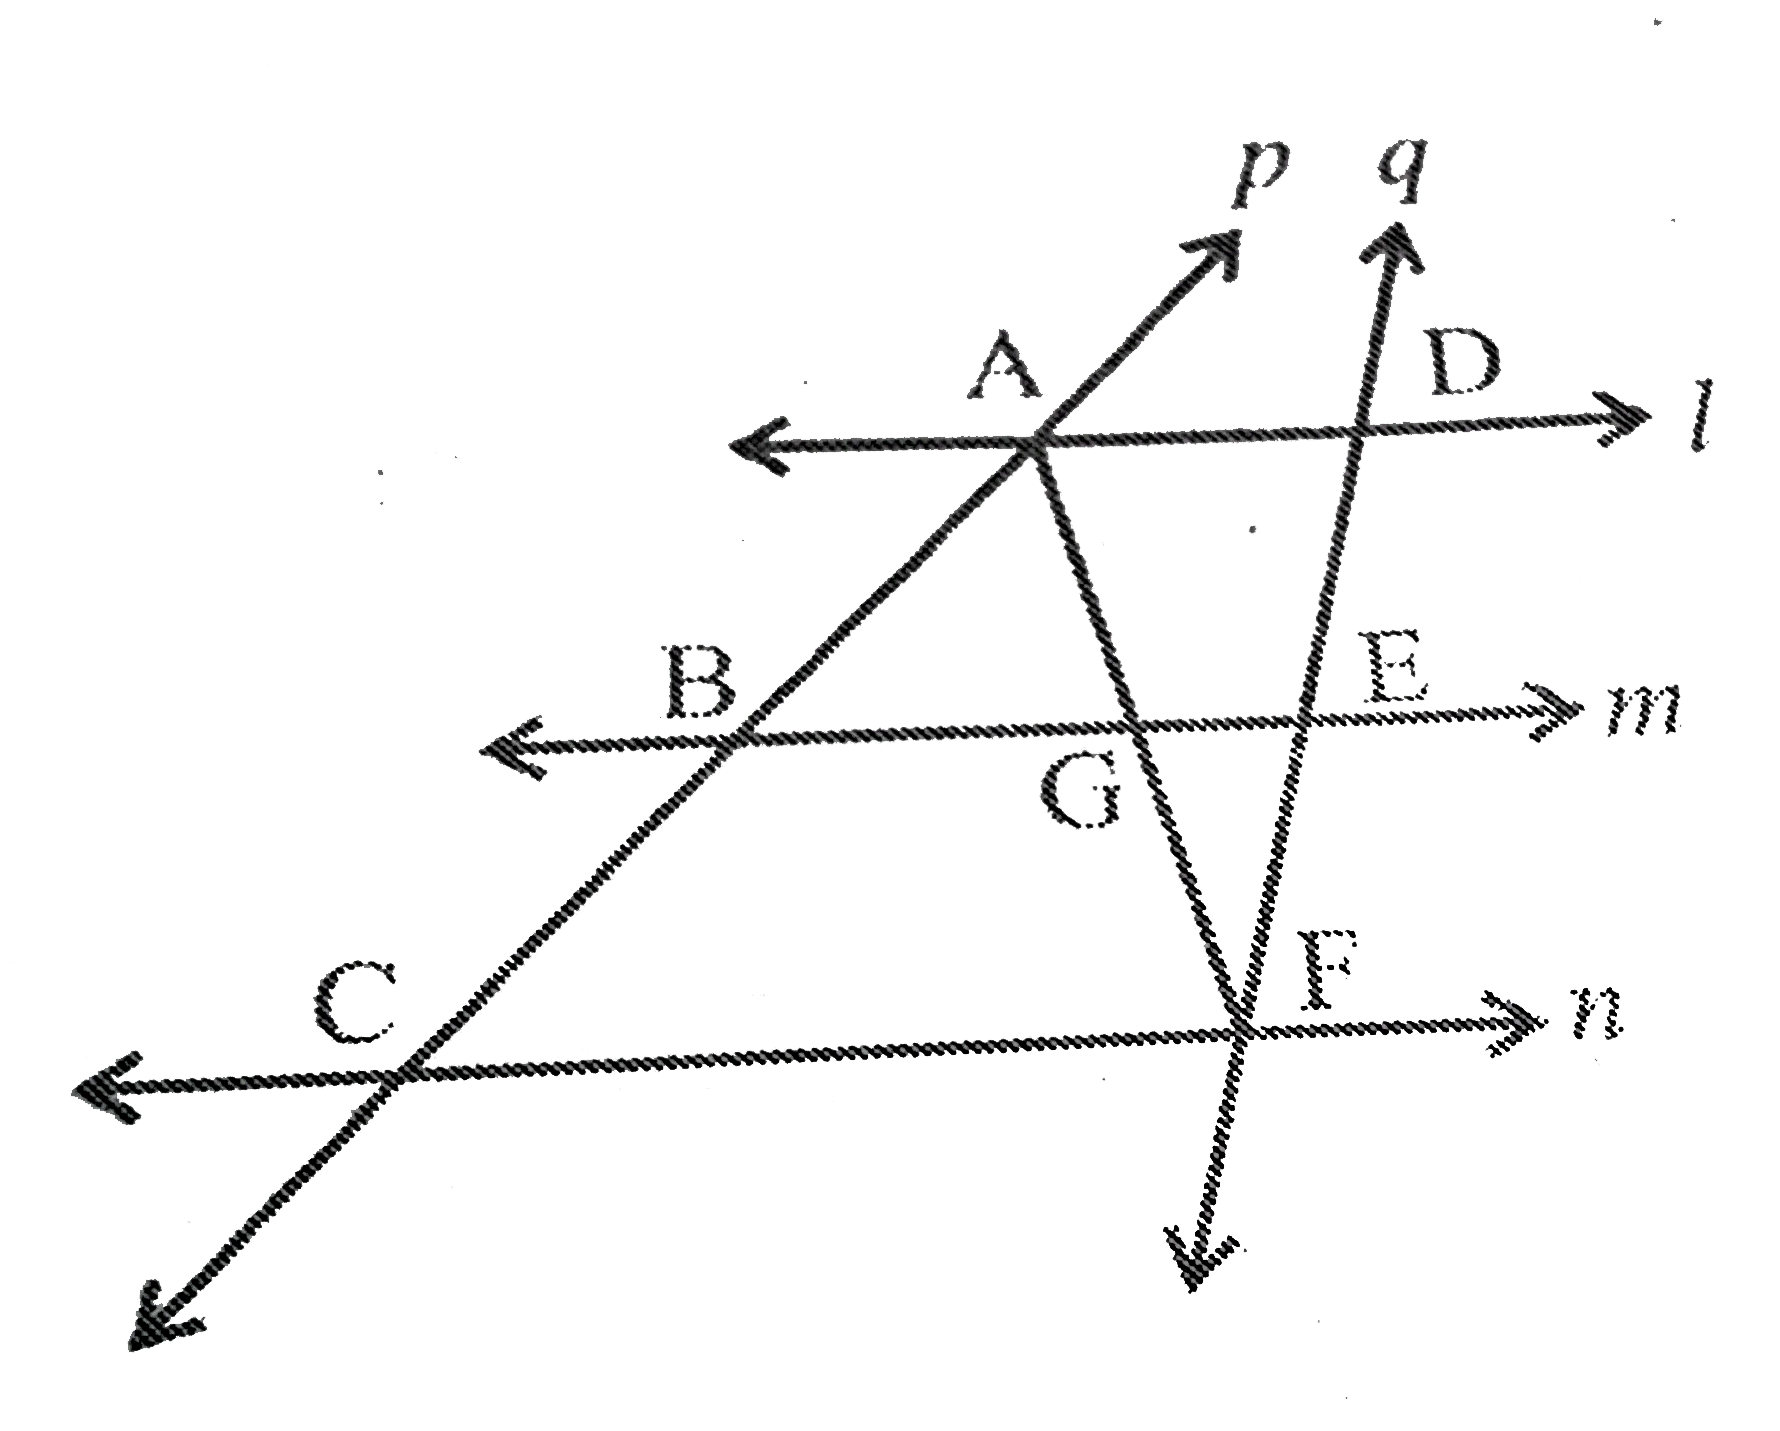 l , m  और  n  तीन  समांतार  रेखाएँ है  , जो  तिर्यक  रेखाओं p  और q  द्वारा  इस  प्रकार  प्रतिच्छेदित हैं कि  l,m  और  n  रेखा p  पर  सामान   अंत : खंड  AB और  BC काटती  हैं  ( देखिए  आक्रति  8.28 ) | दर्शाइए  कि  l , m  और n  रेखा  q  पर  भी  सामान  अंत : खंड  DE  और EF  कटती  हैं ।